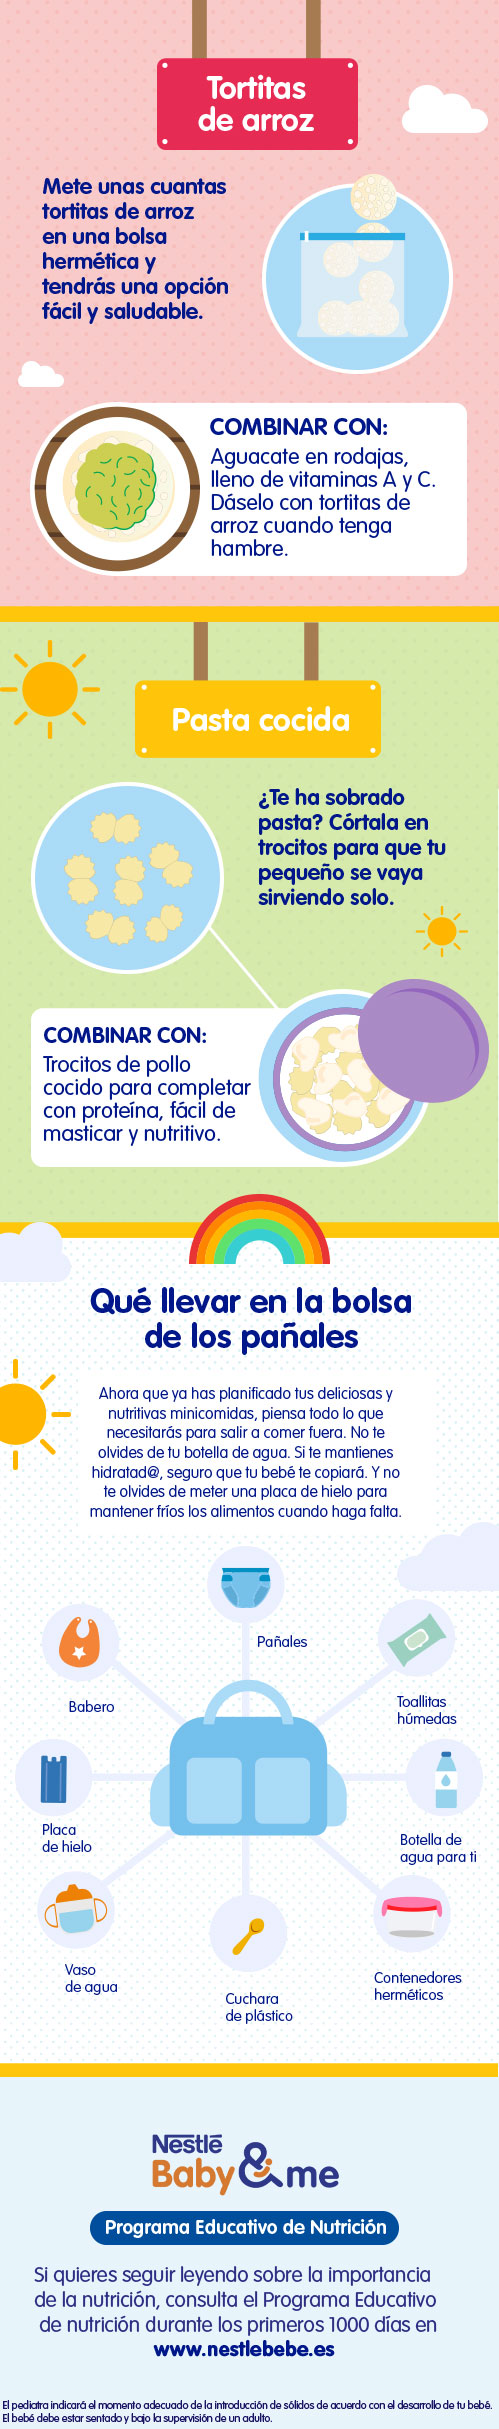 Snacks saludables para bebés, infografía